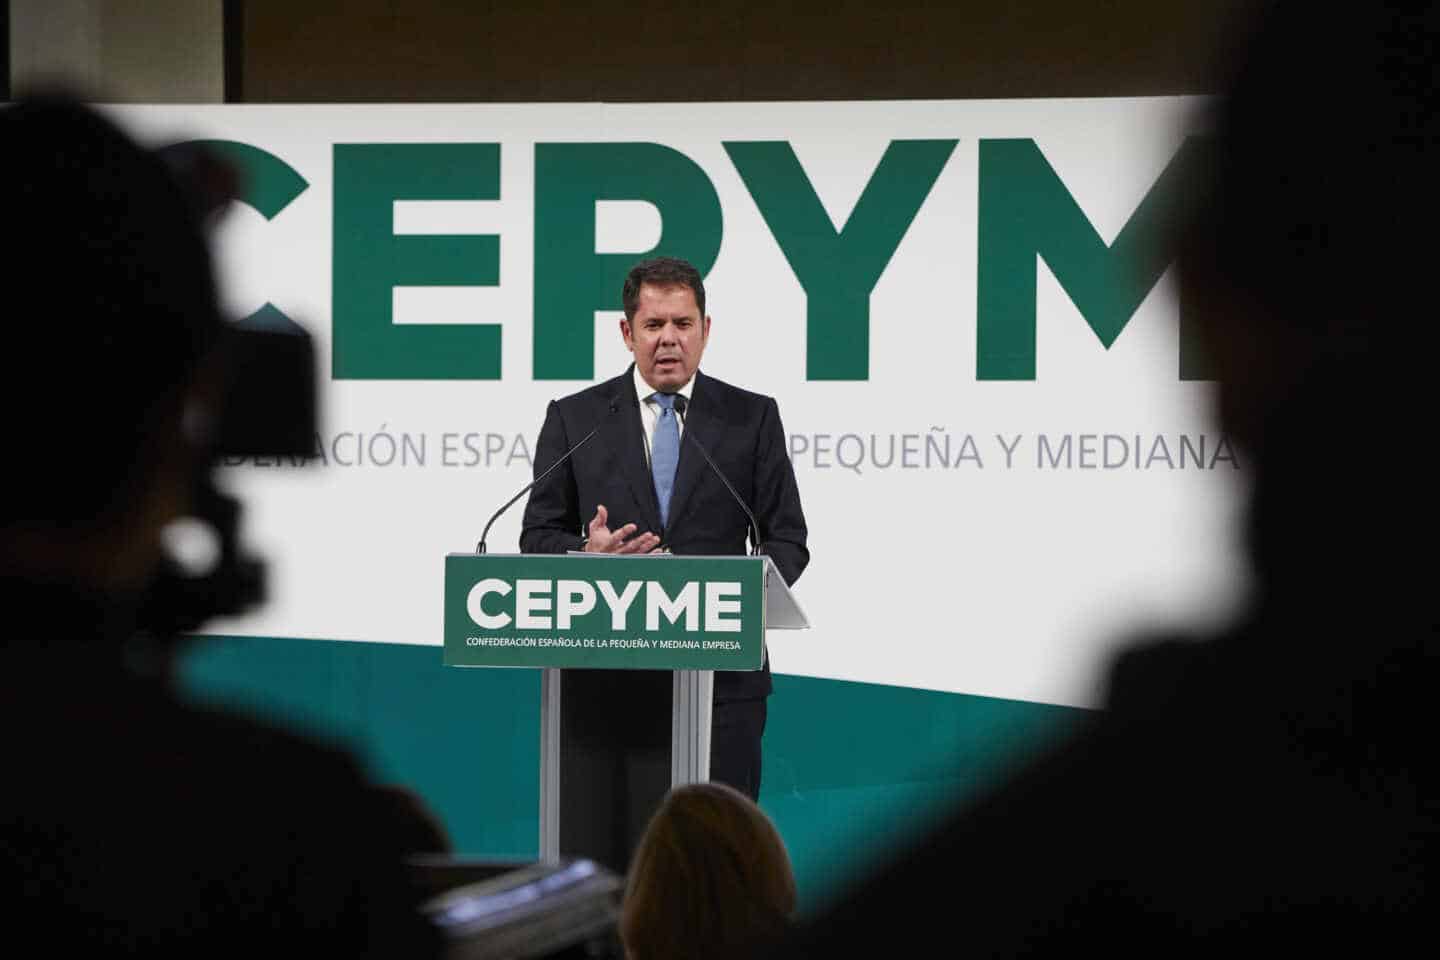 Gerardo Cuerva, presidente de Cepyme.